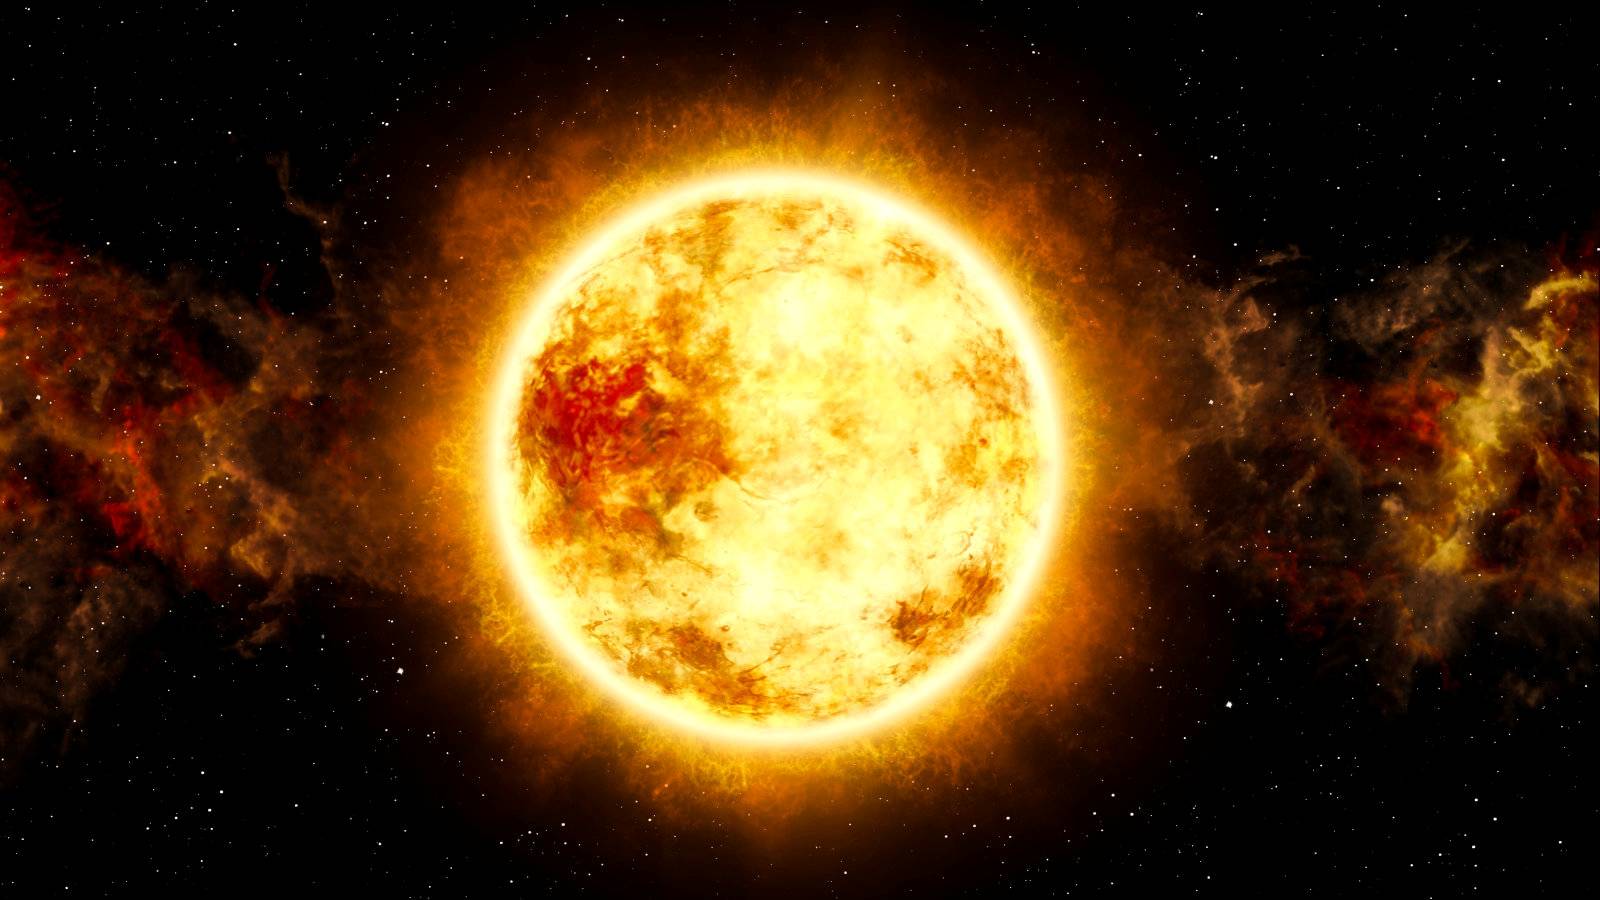 Soarele are 4.603 miliarde de ani